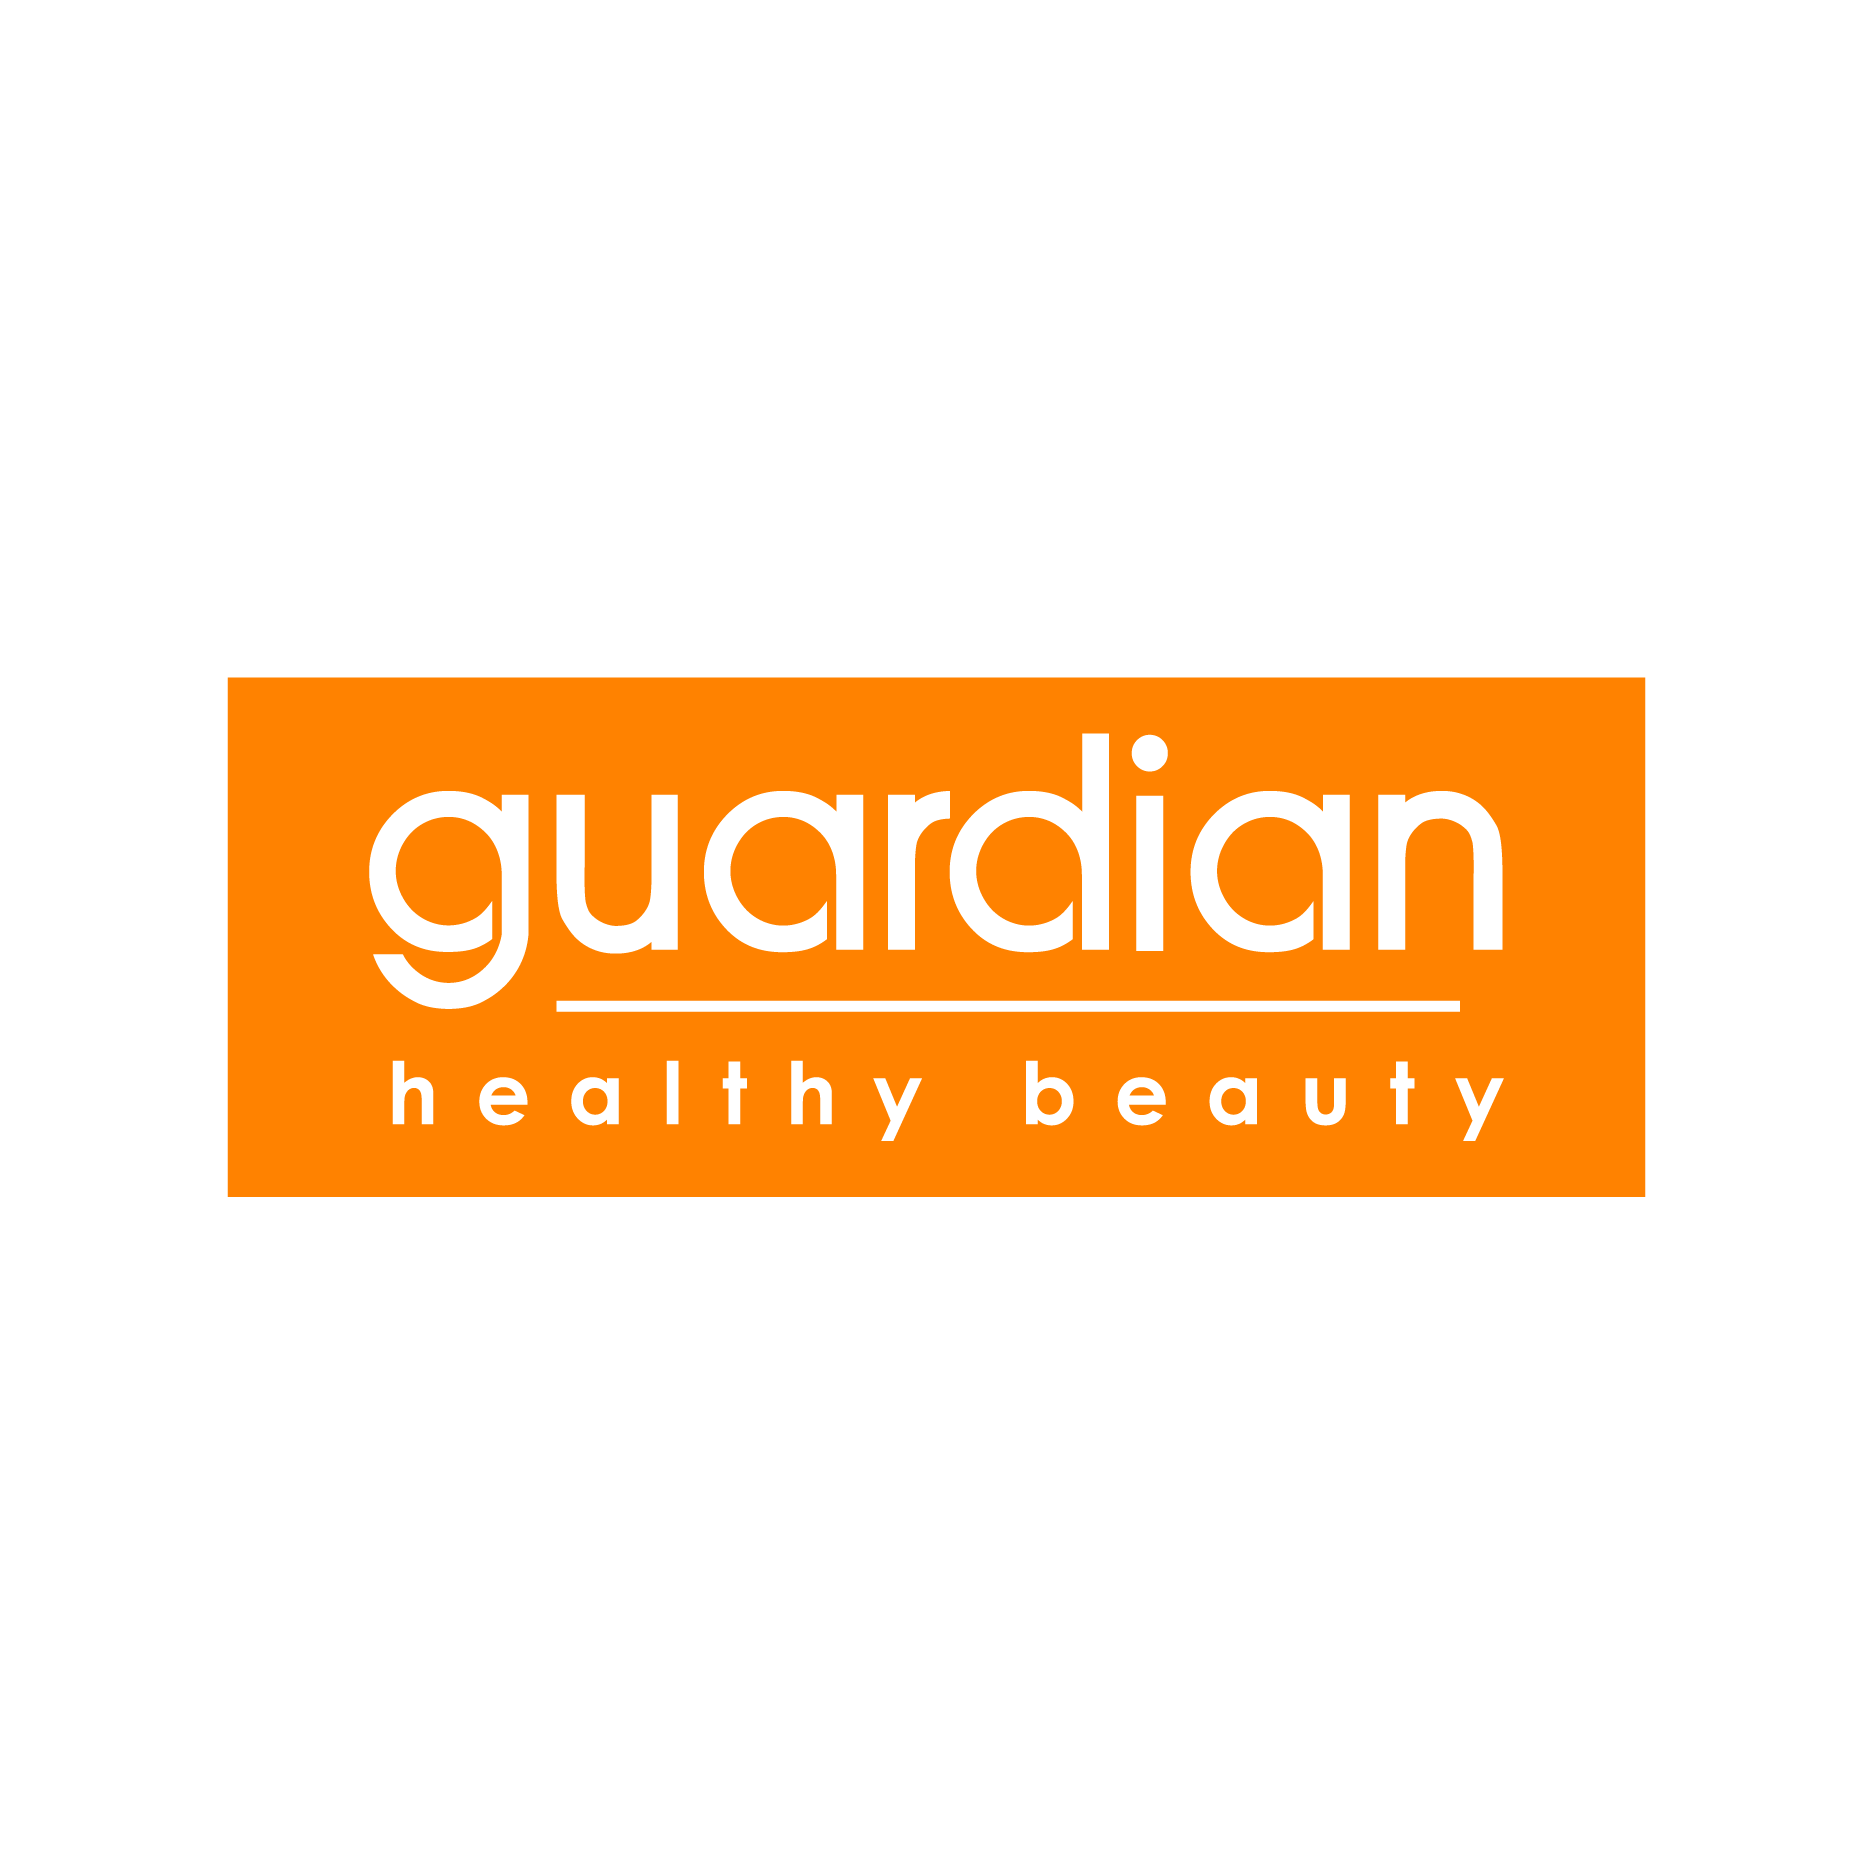 [Guardian | UrBox] Evoucher trị giá 100,000đ - Áp Dụng Tại Tất Cả Cửa Hàng Thuộc Hệ Thống Guardian